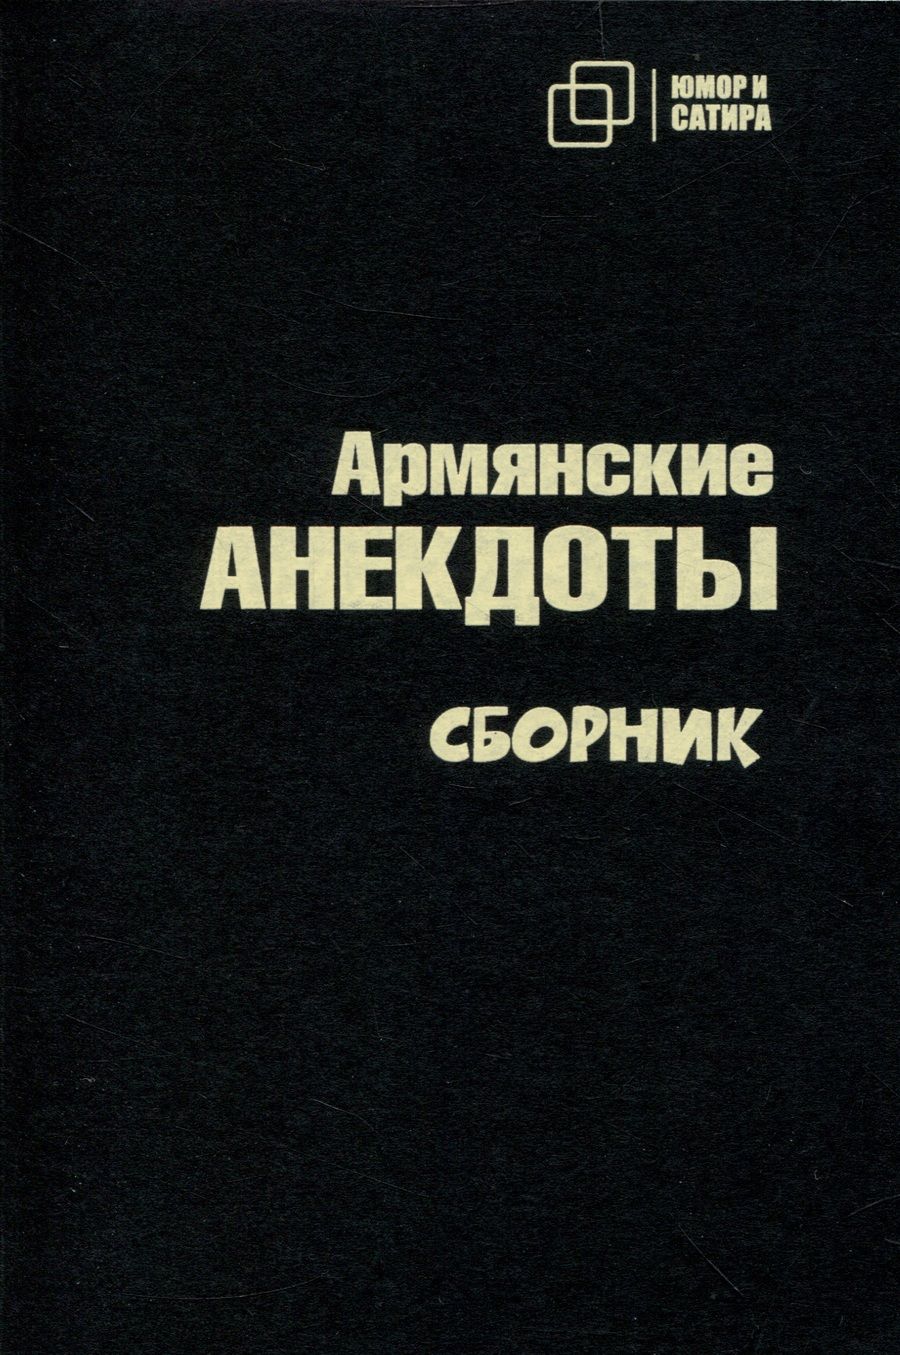 Обложка книги "Армянские анекдоты"